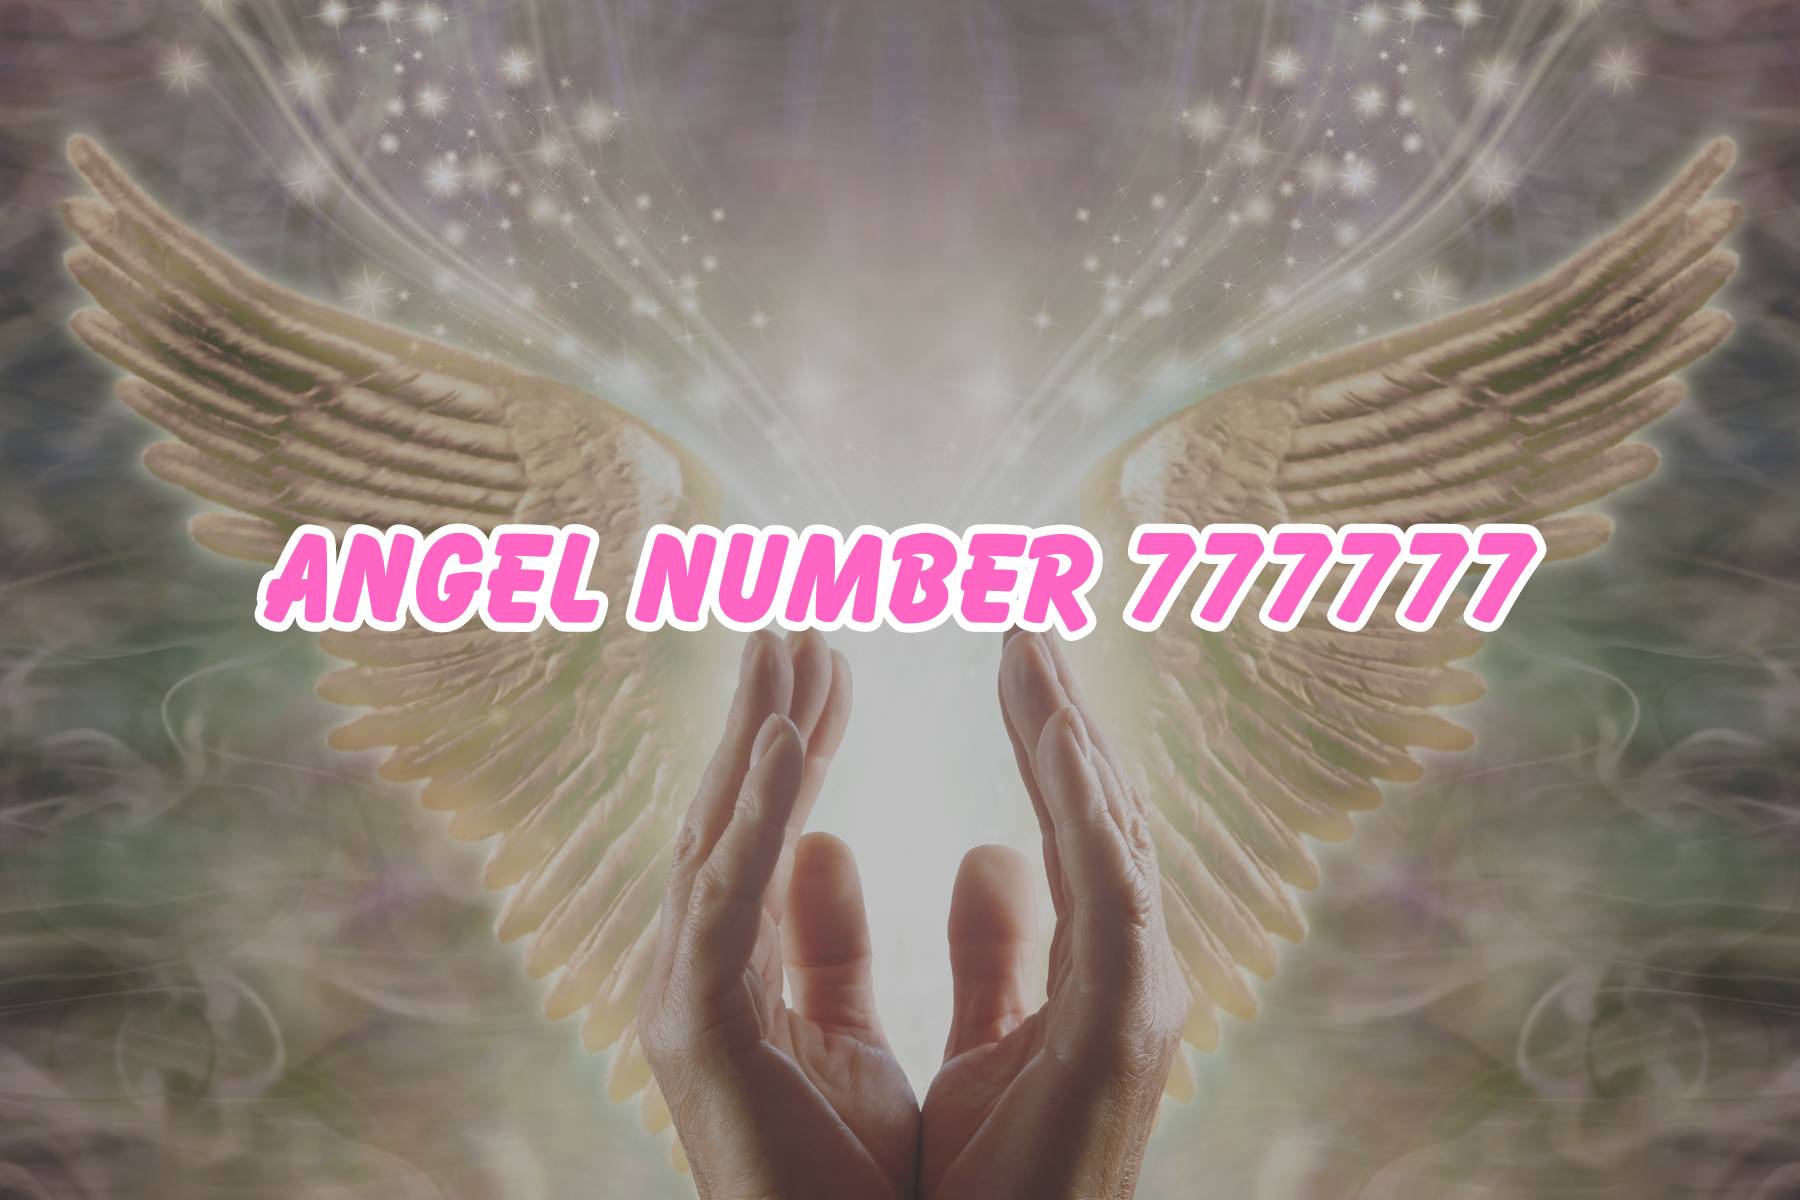 Angel Number 777777